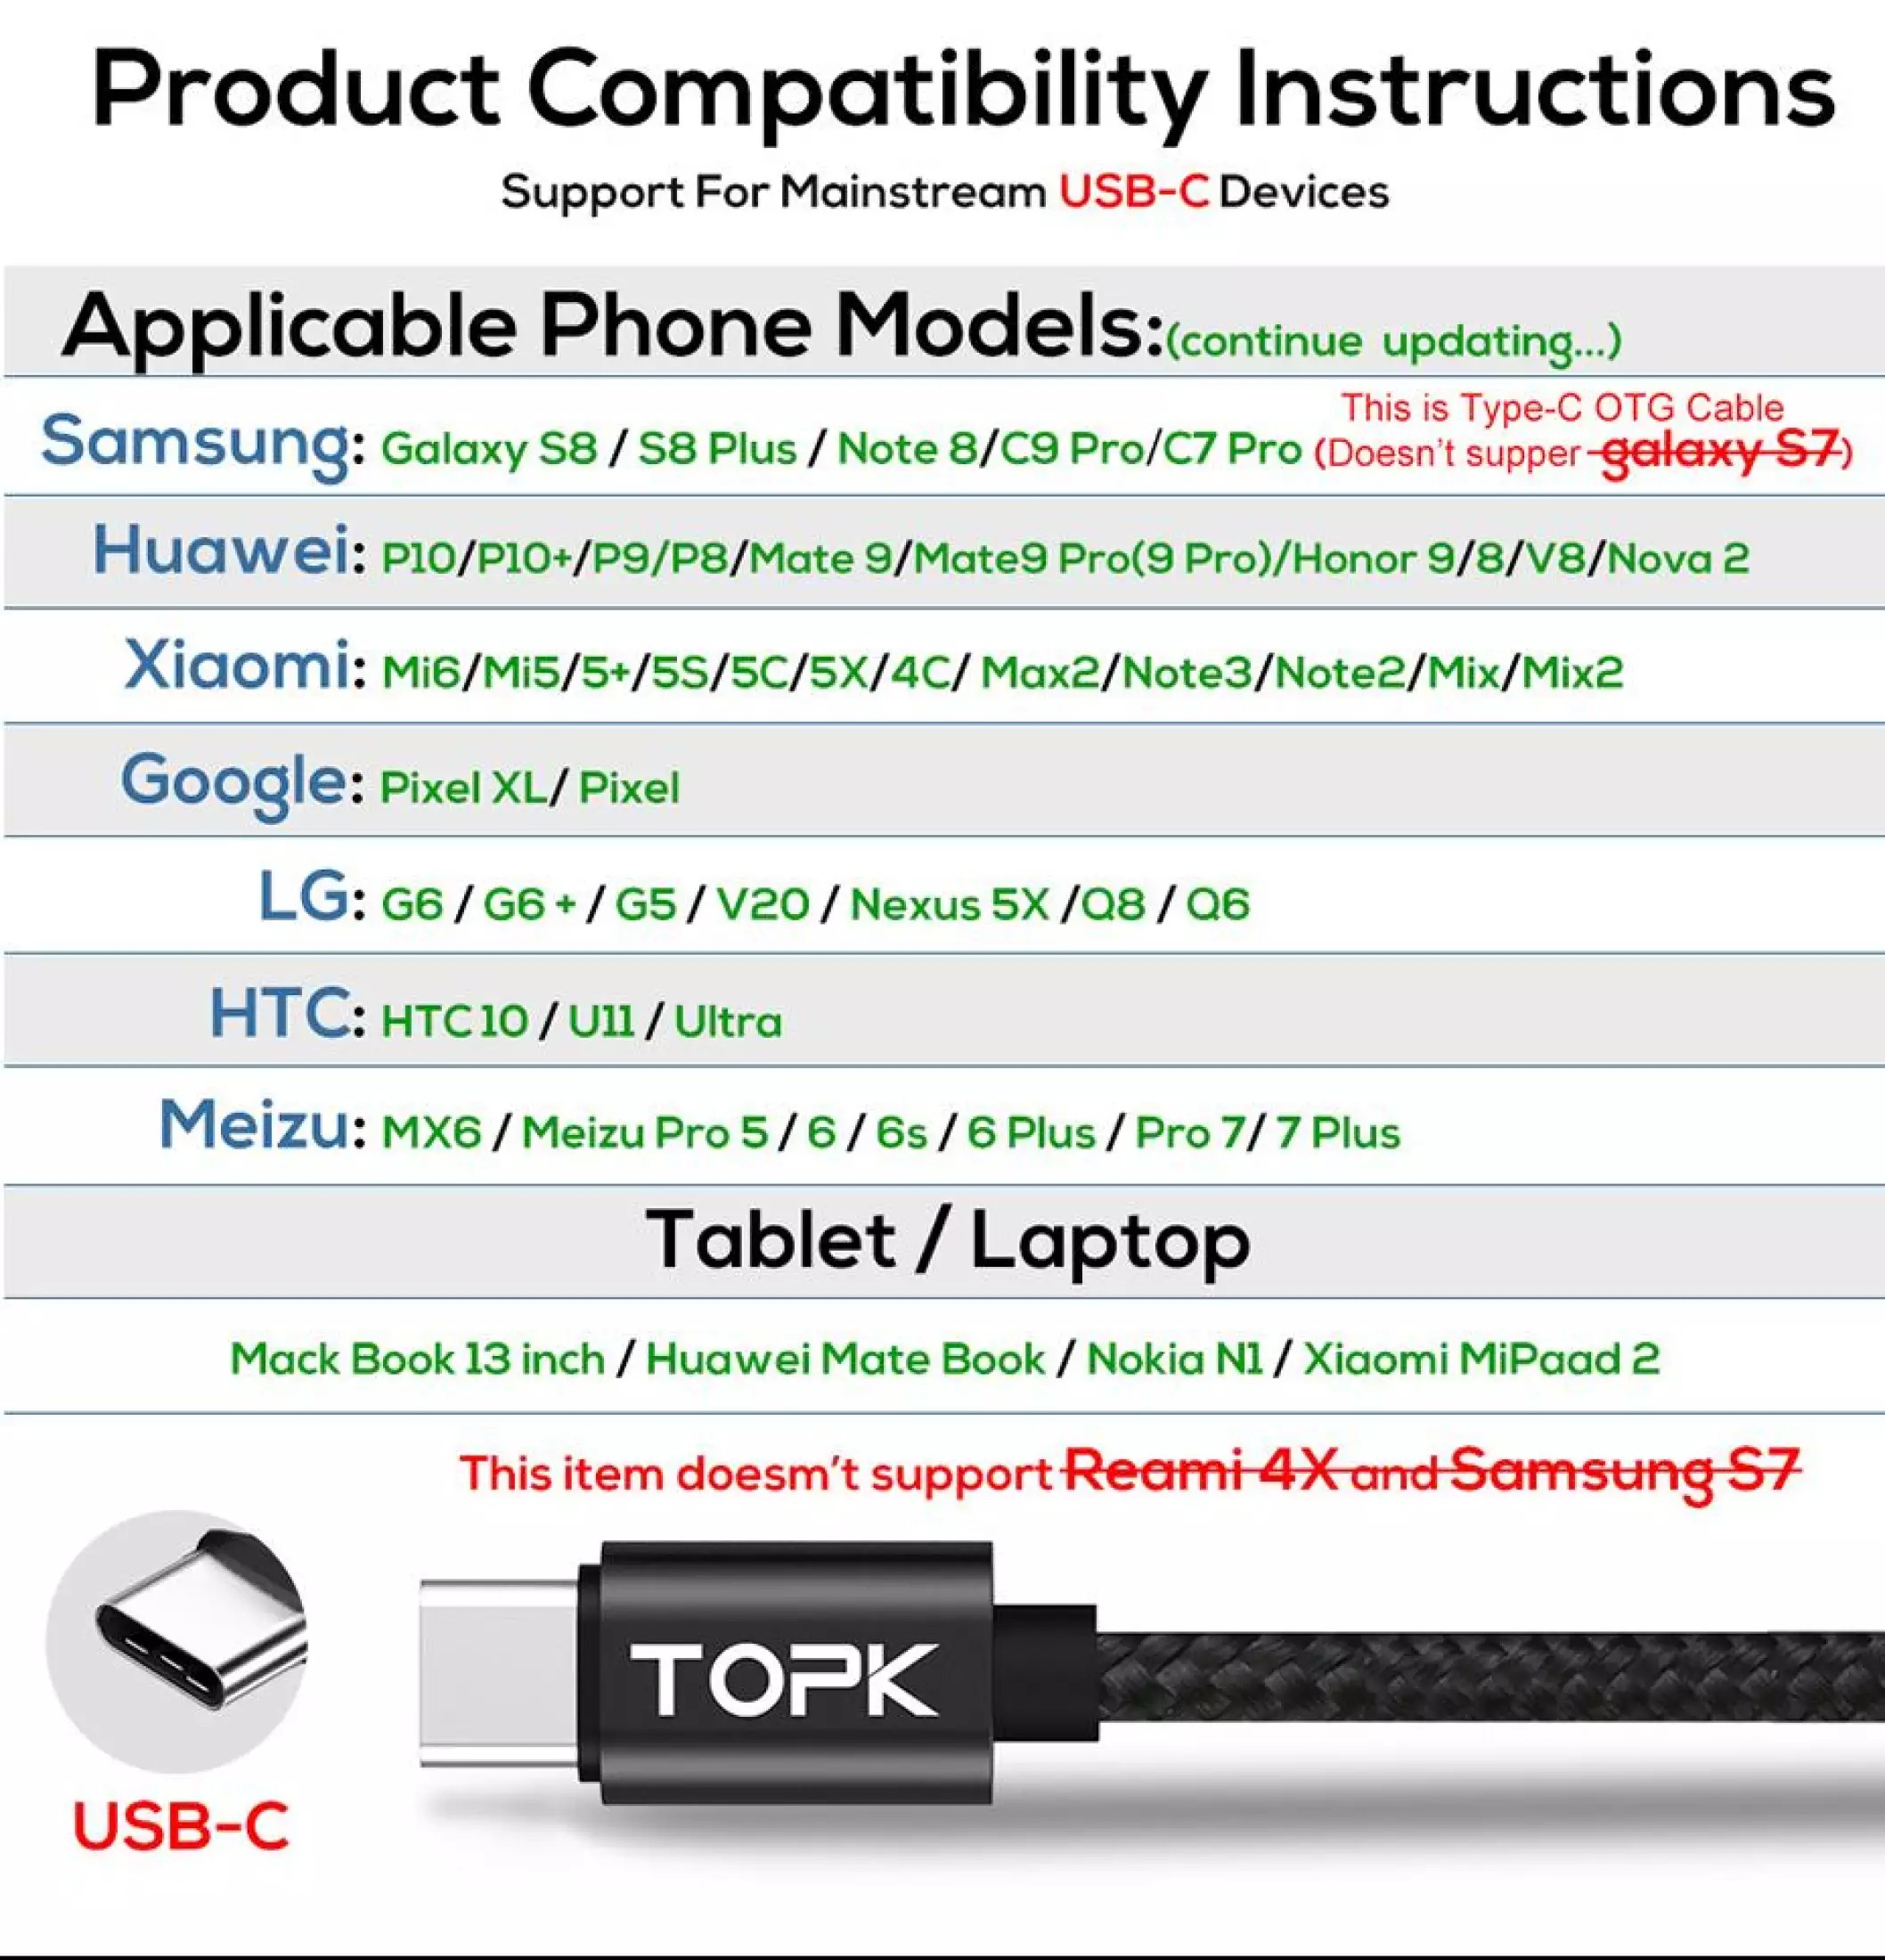 [BẢO HÀNH 12 THÁNG]- Cáp sạc TOPK AC27 USB - Lightning sạc nhanh 3A dùng cho Samsung Xiaomi Huawei giá tốt - INTL - Phân phối chính hãng bởi TOPK VIỆT NAM